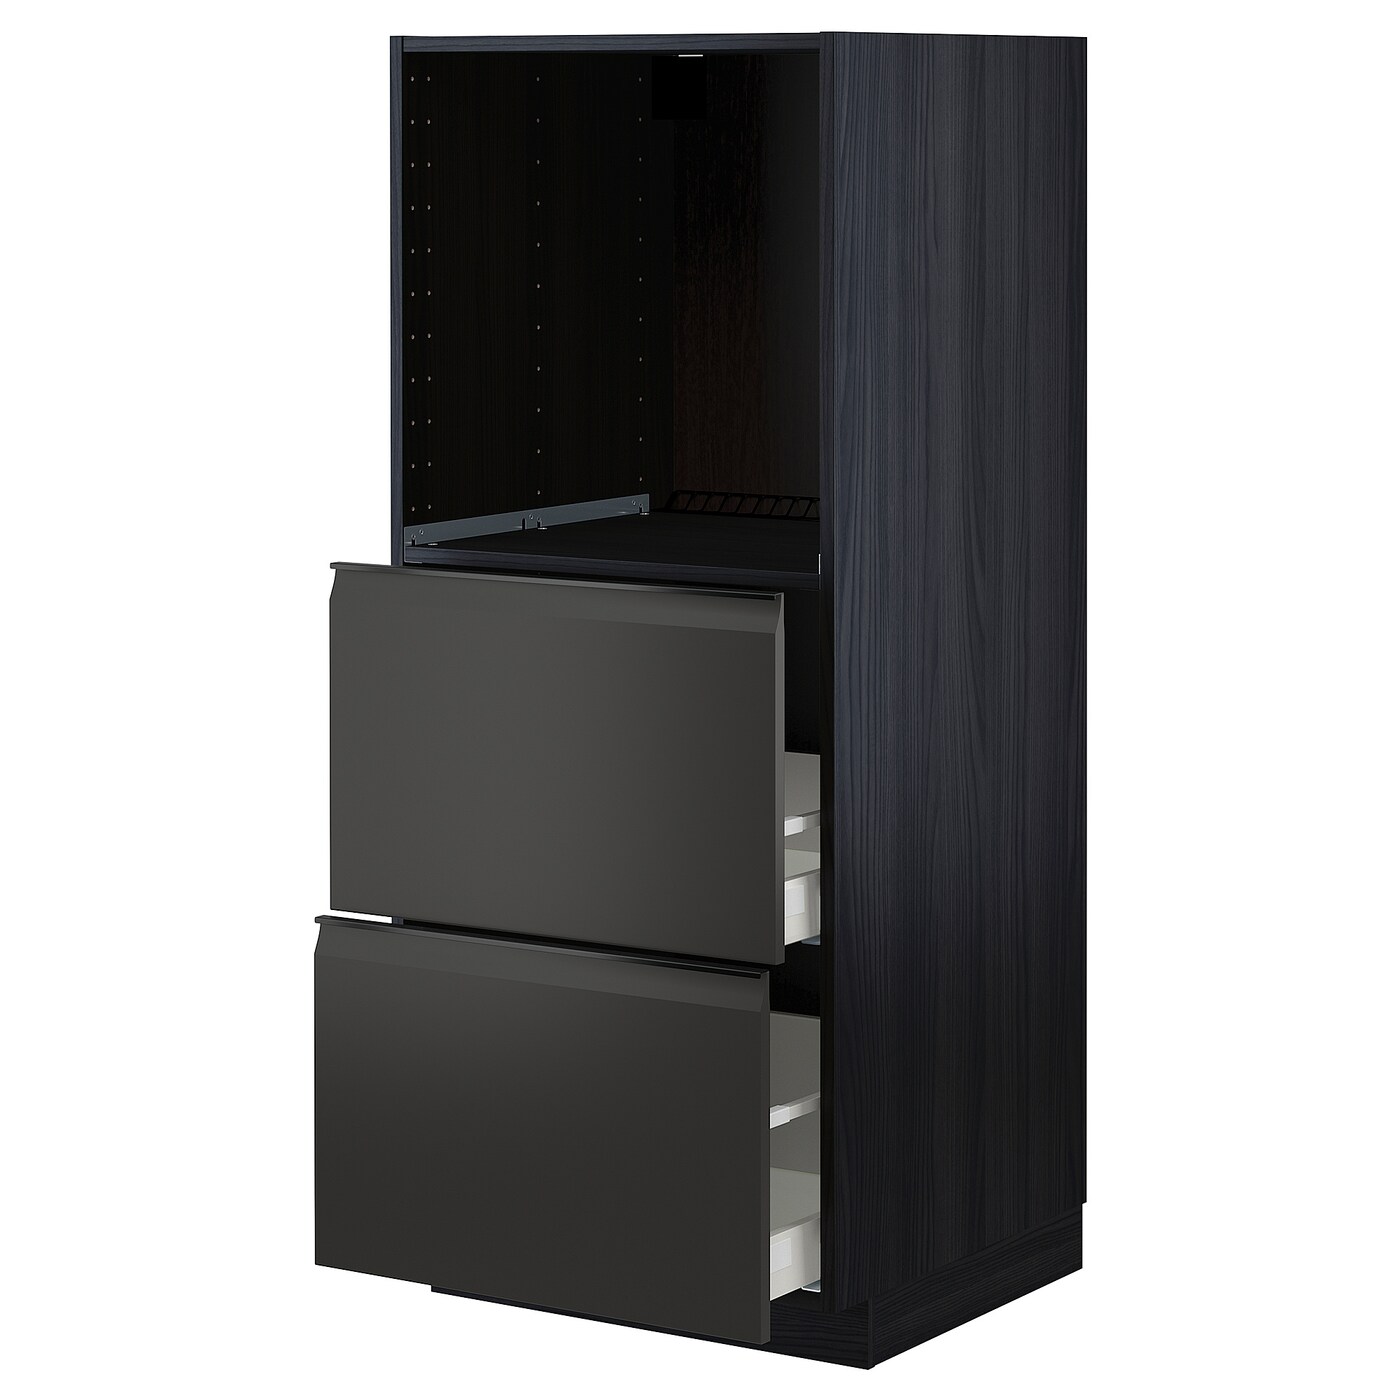 Напольный шкаф с выдвижными ящиками  - IKEA METOD MAXIMERA, 148x61,6x60см, черный, МЕТОД МАКСИМЕРА ИКЕА